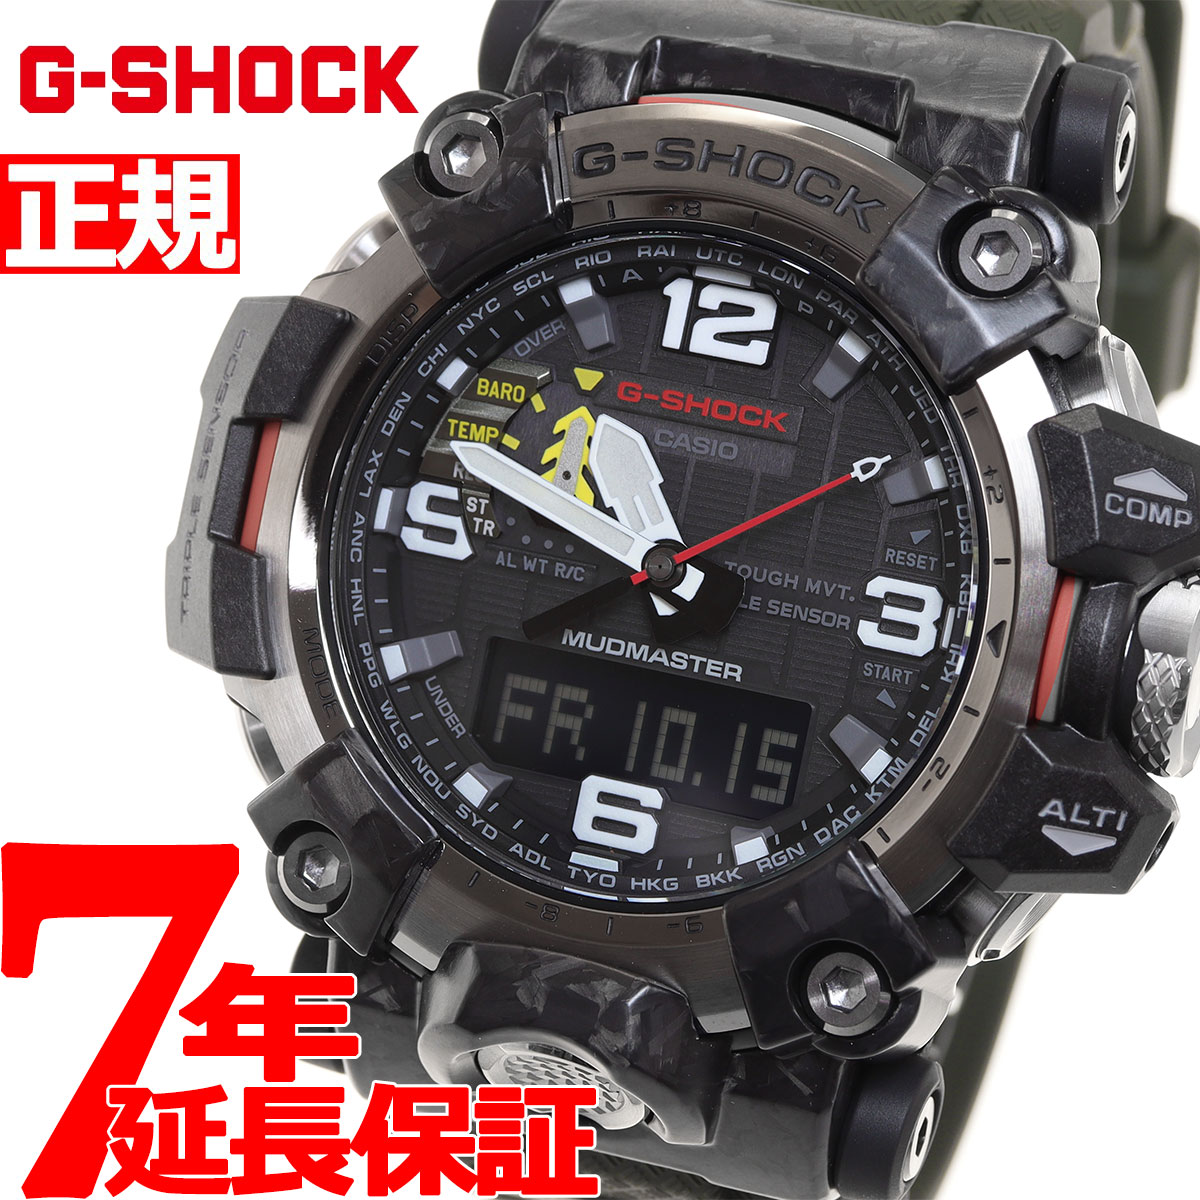 品質のいい G-SHOCK カシオ Gショック マッドマスター CASIO 腕時計